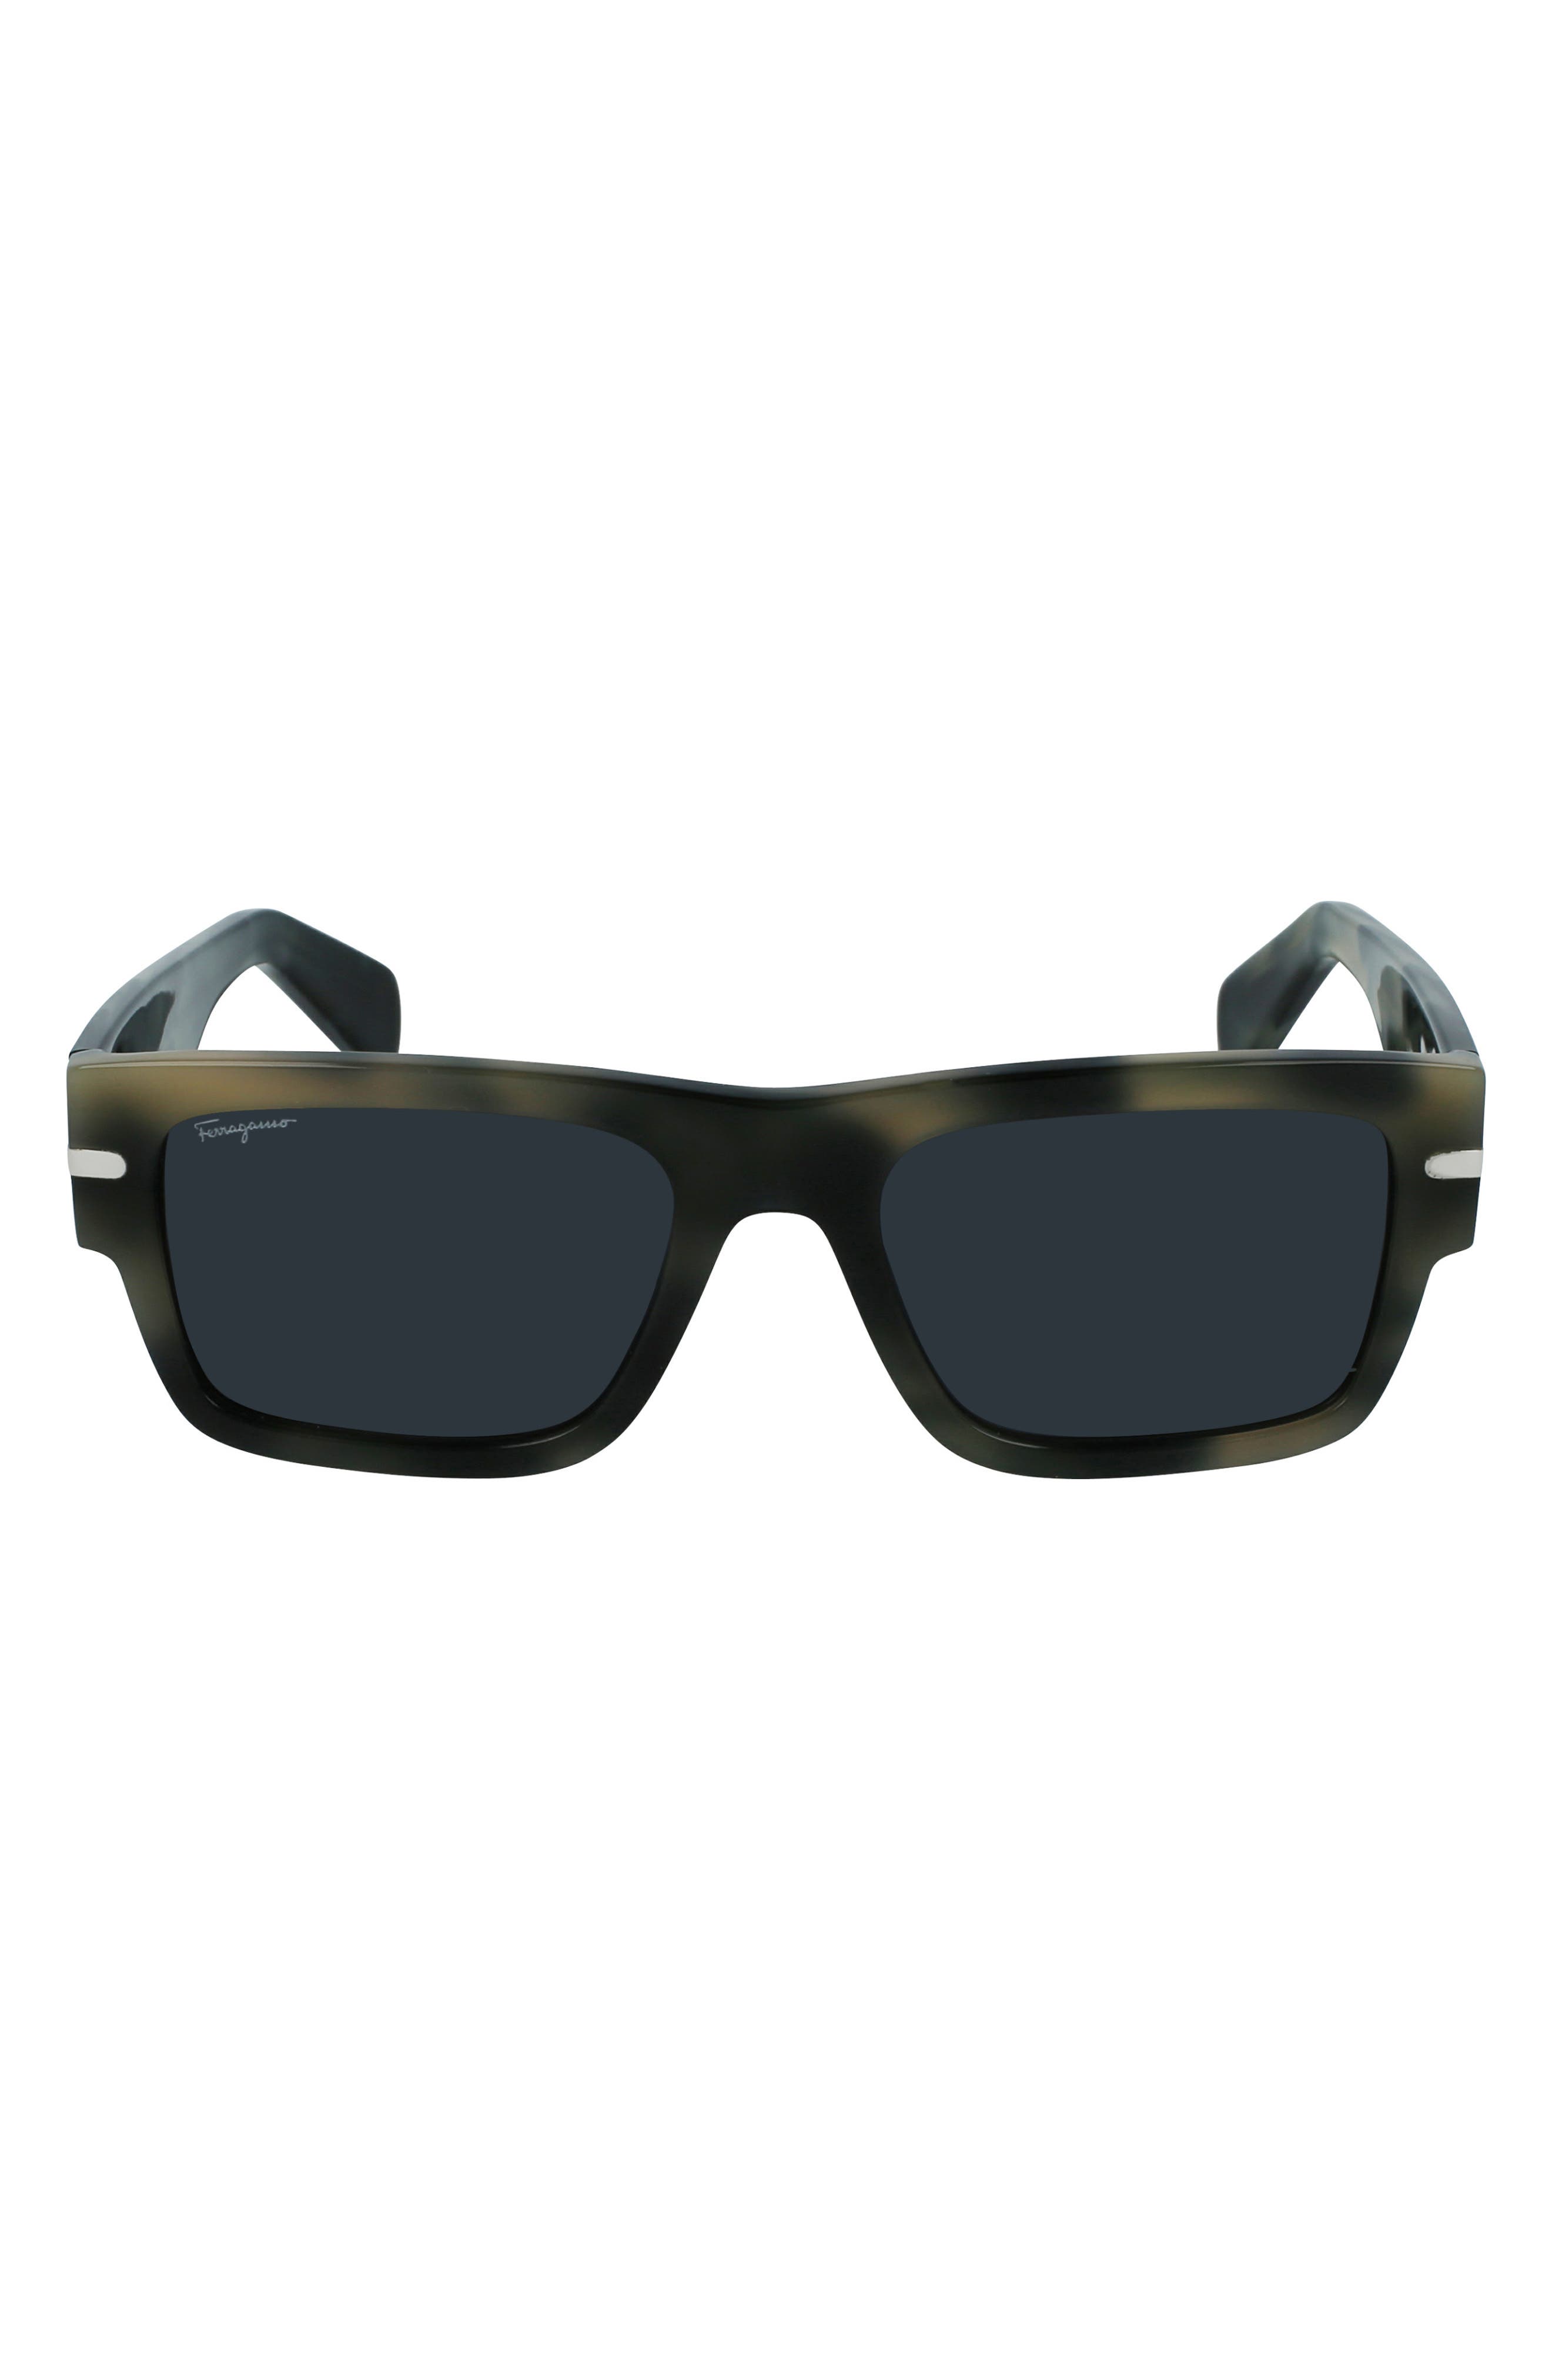 Salvatore Ferragamo Classic Logo 54mm Rectangular Sunglasses in Grey Havana at Nordstrom